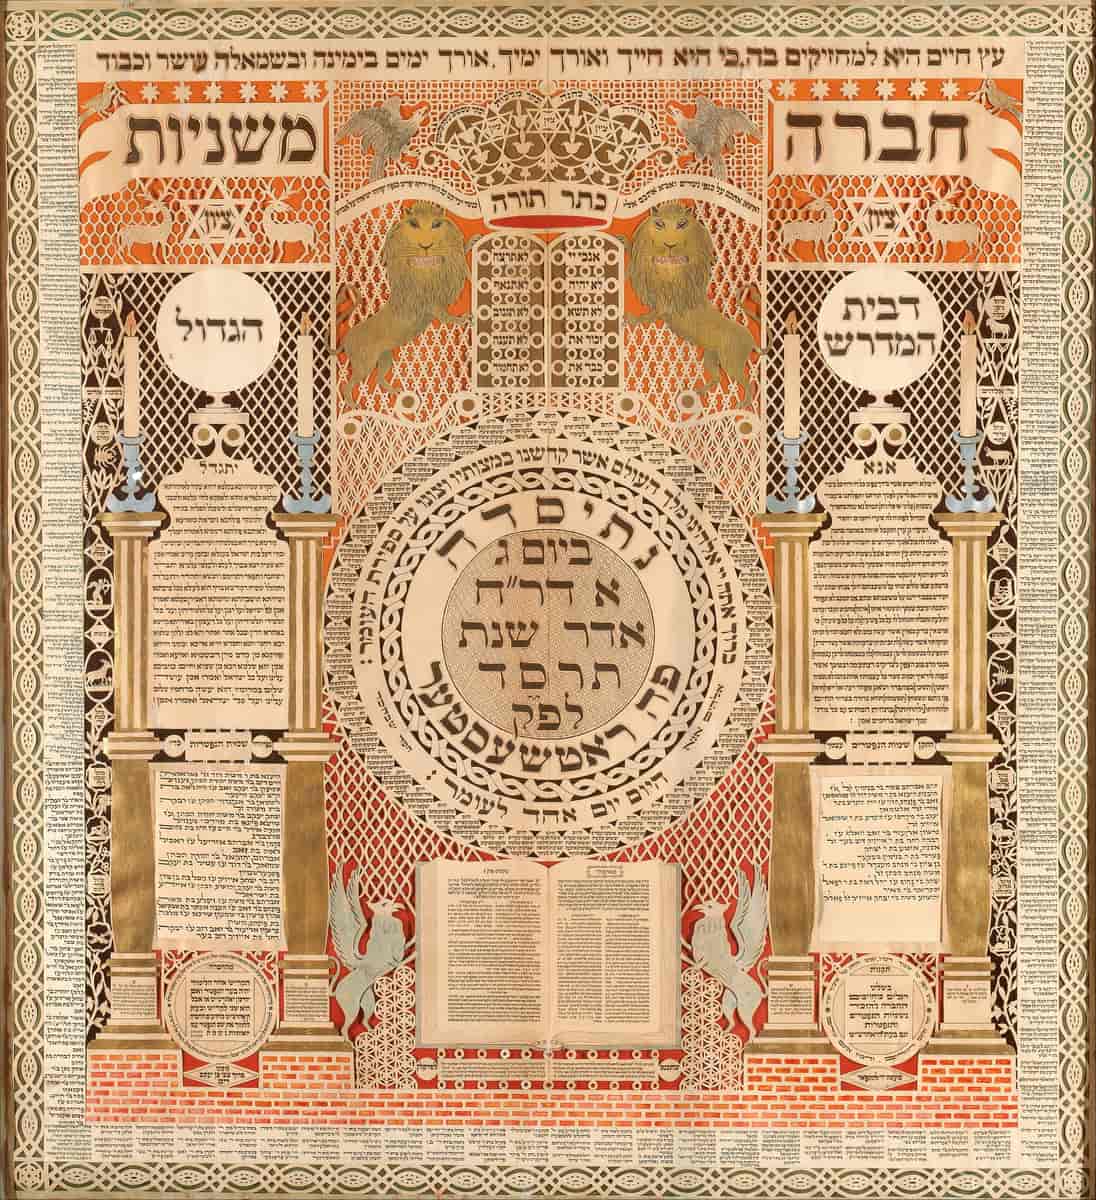 Kunstferdig utformet minnetavle og jødisk kalender fra 1904